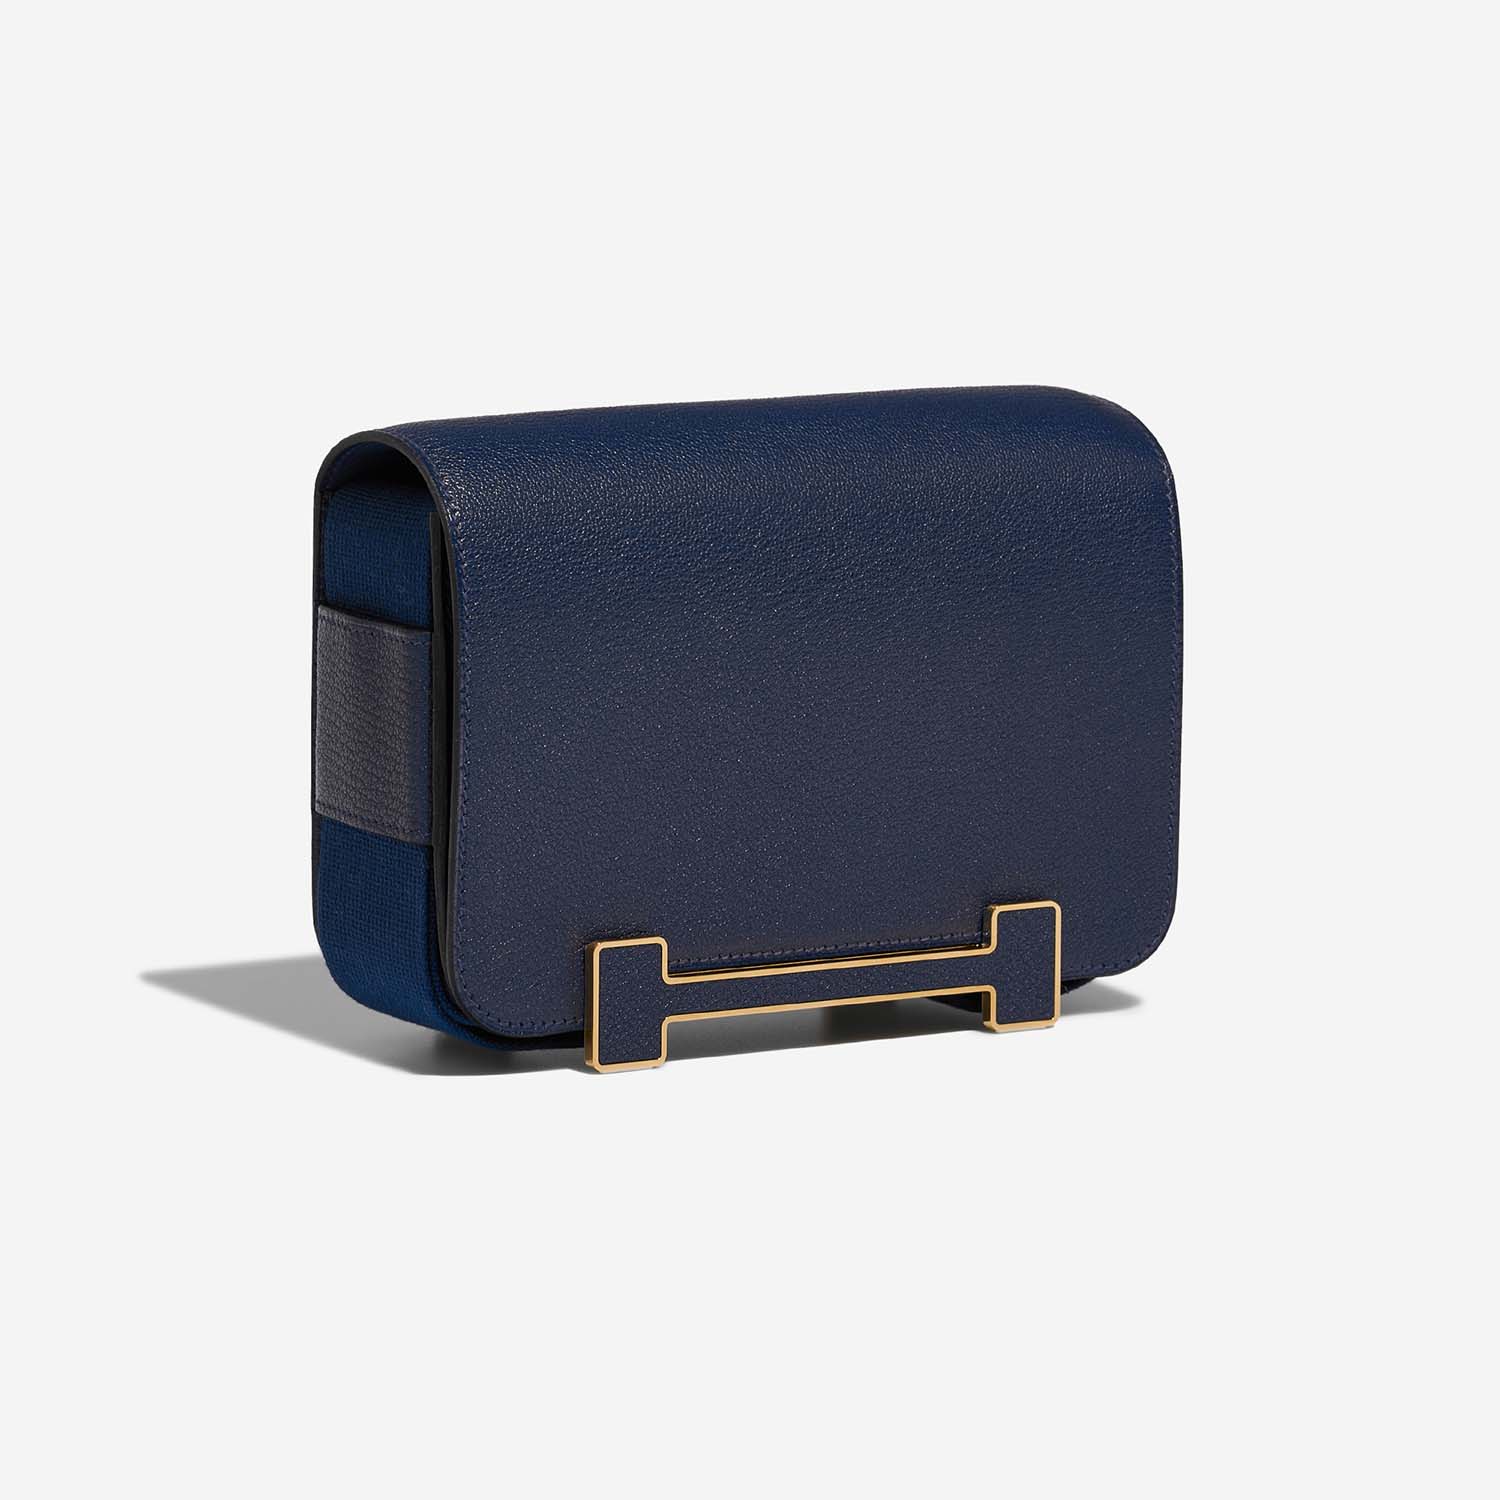 Hermès Geta Navy Side Front | Verkaufen Sie Ihre Designer-Tasche auf Saclab.com